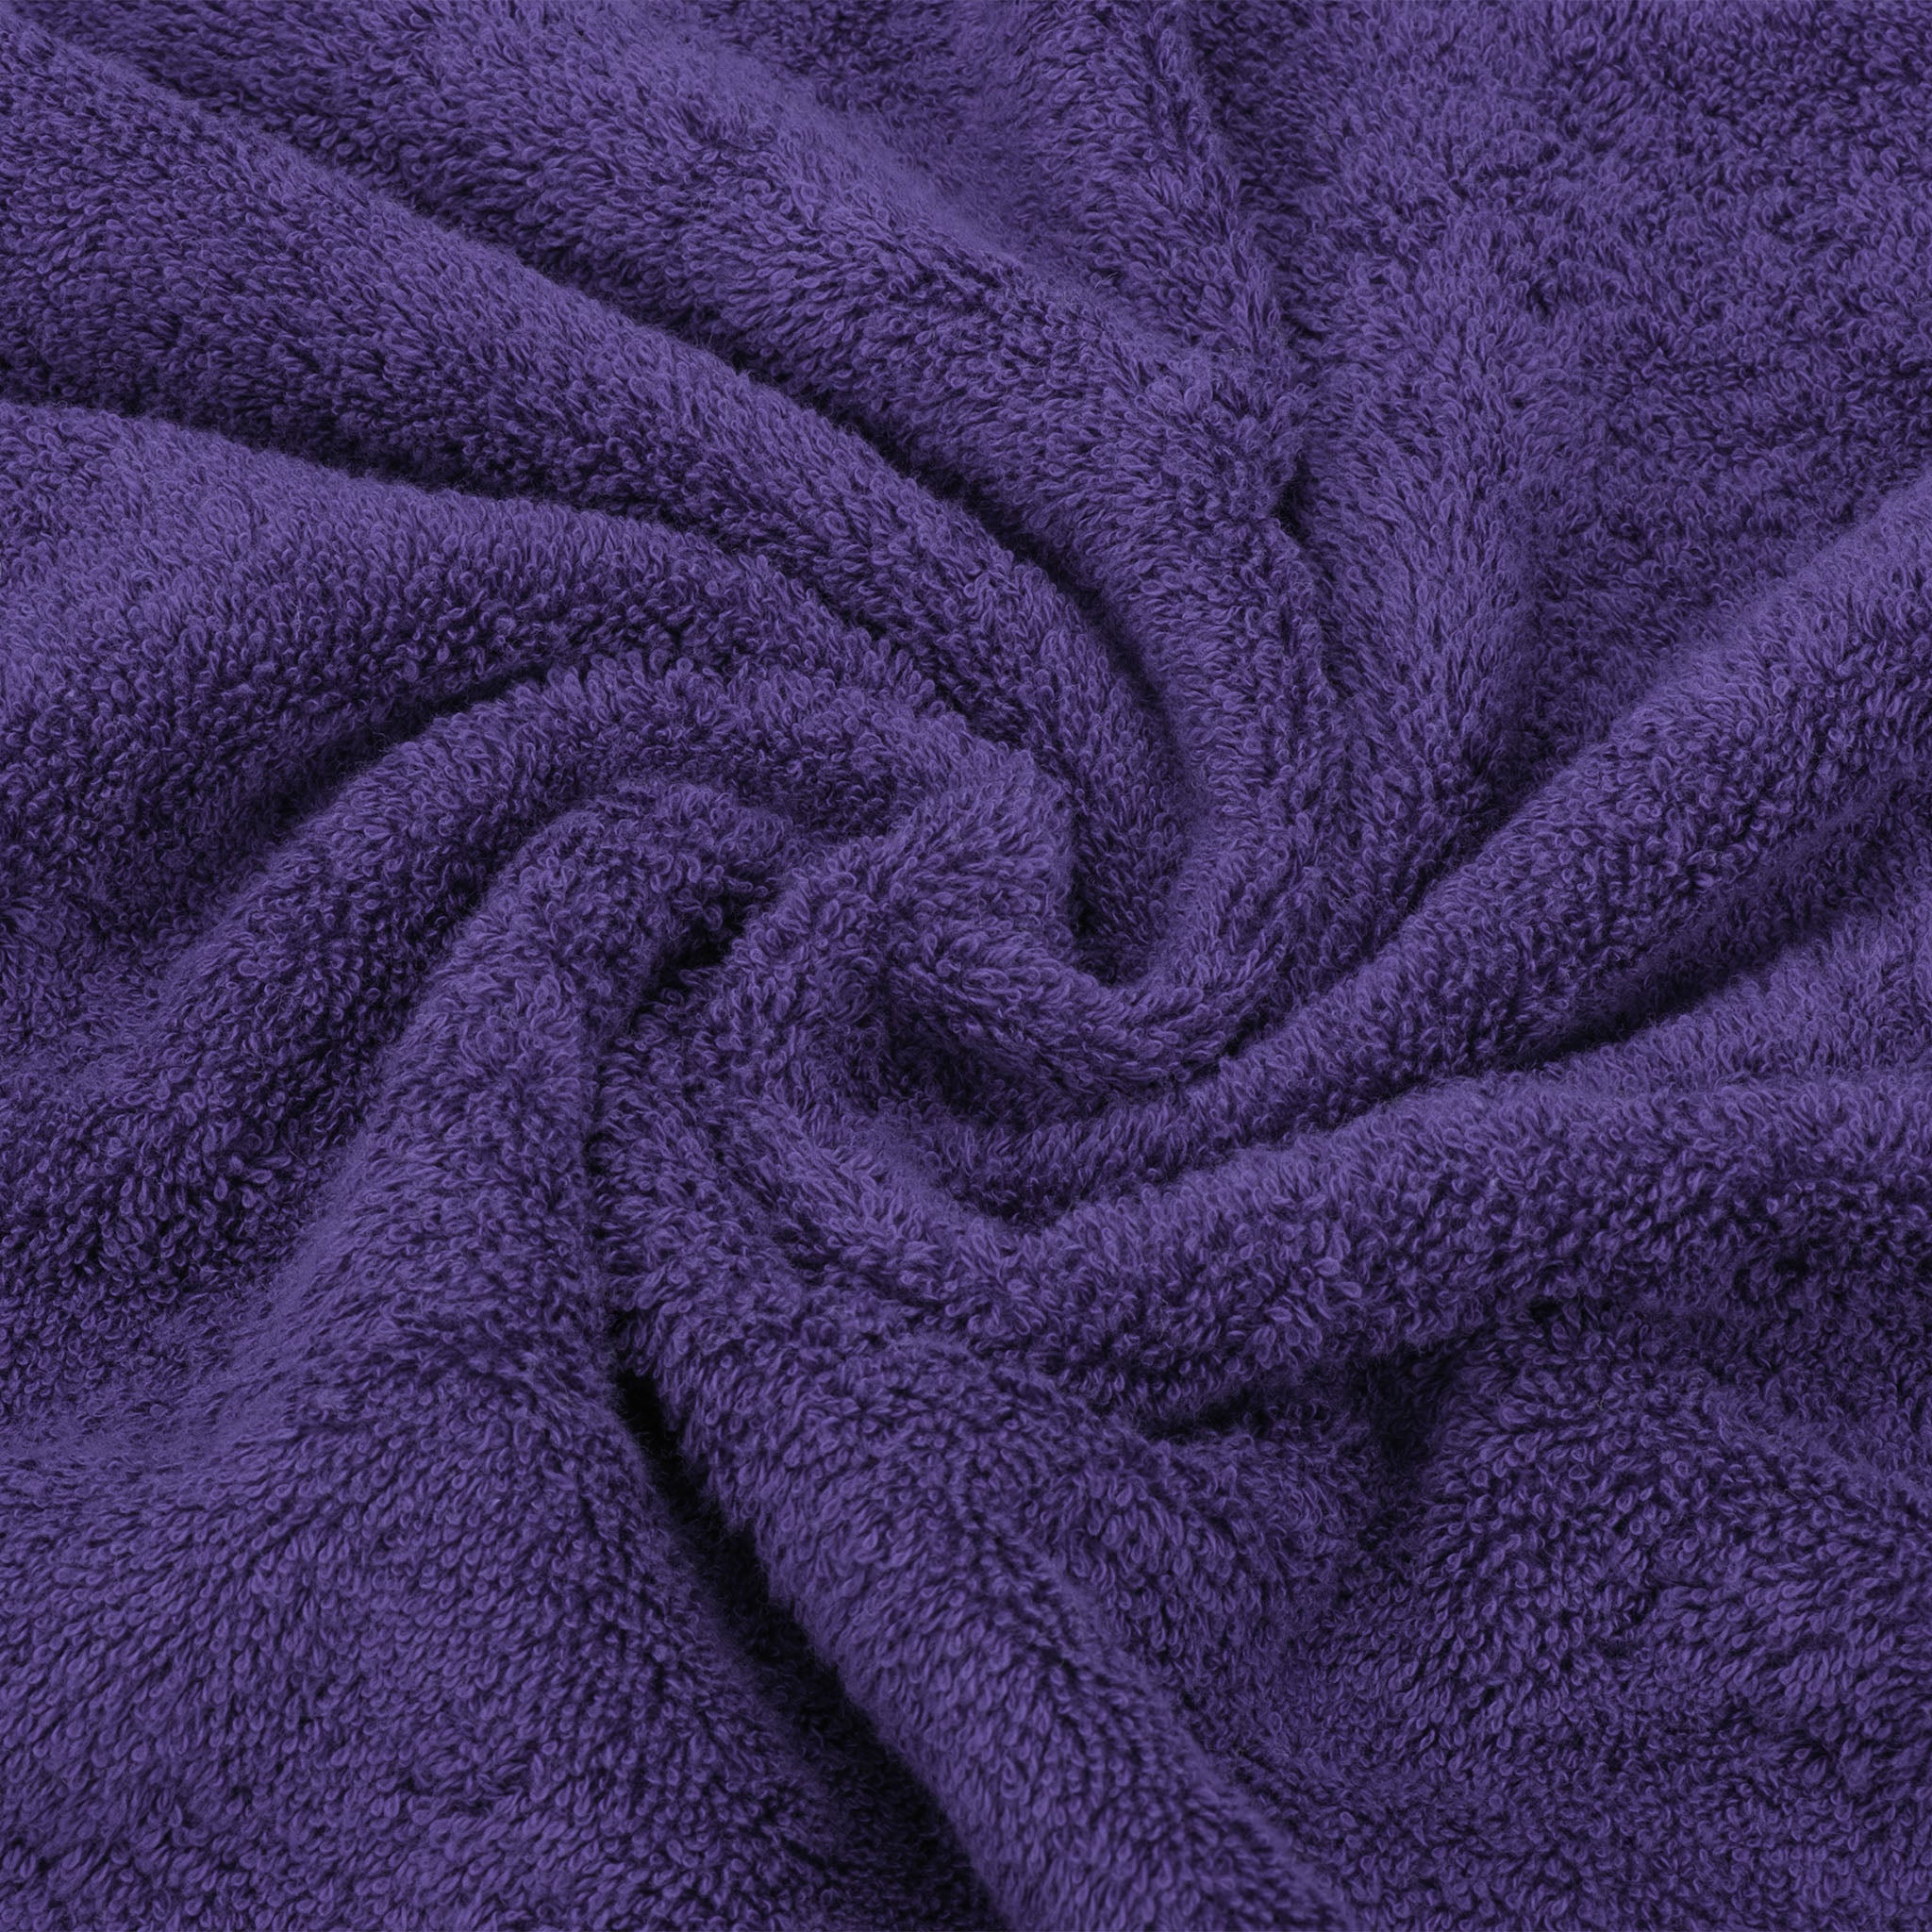 American Soft Linen 100% Turkish Cotton 6 Piece Towel Set Wholesale purple-7